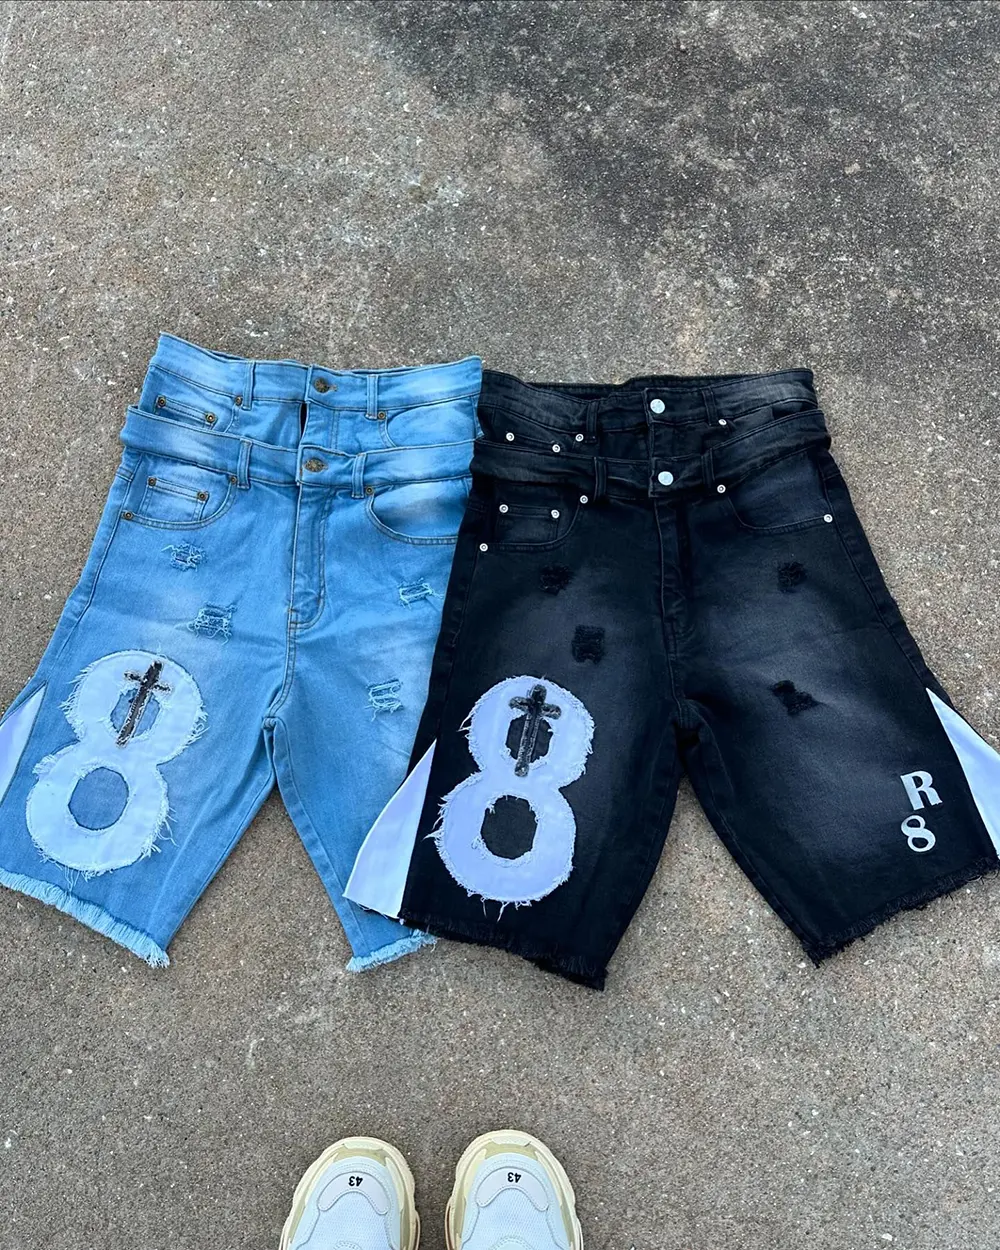 Individuelle große Jeans Shorts Sommer Spleißen Baumwolle Patch Stickerei locker Unisex Bermuda Denim Shorts